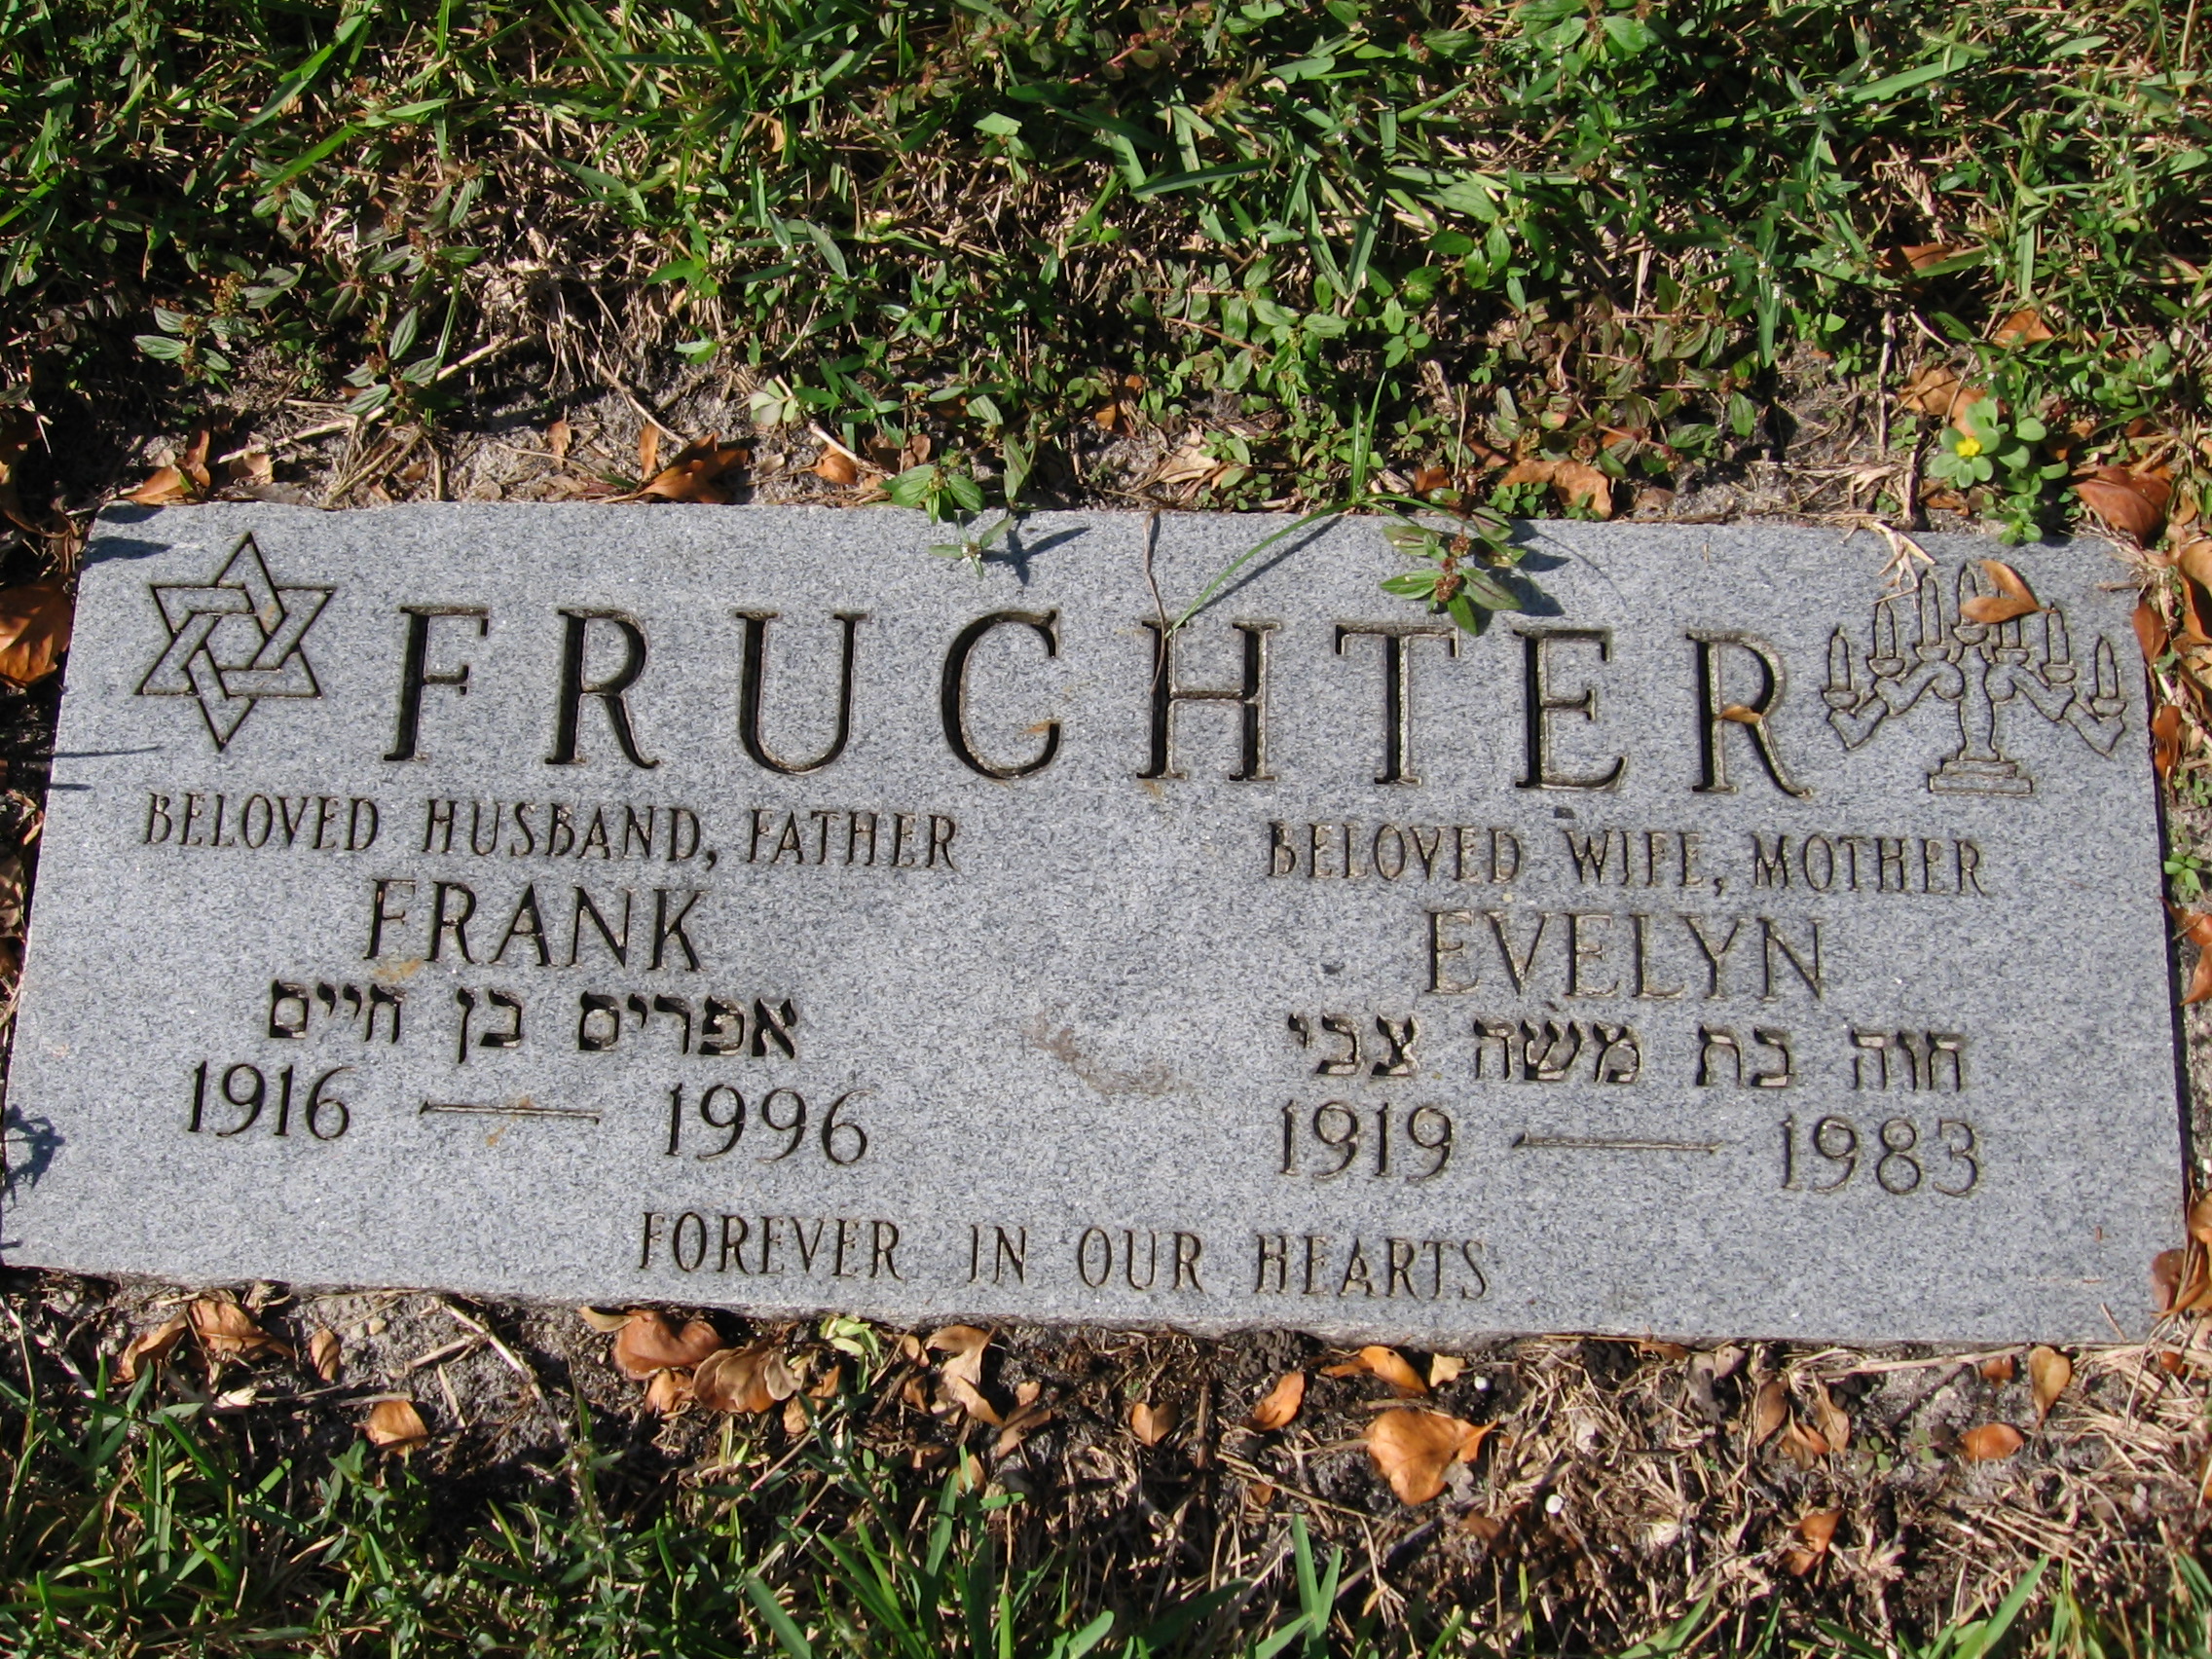 Frank Fruchter